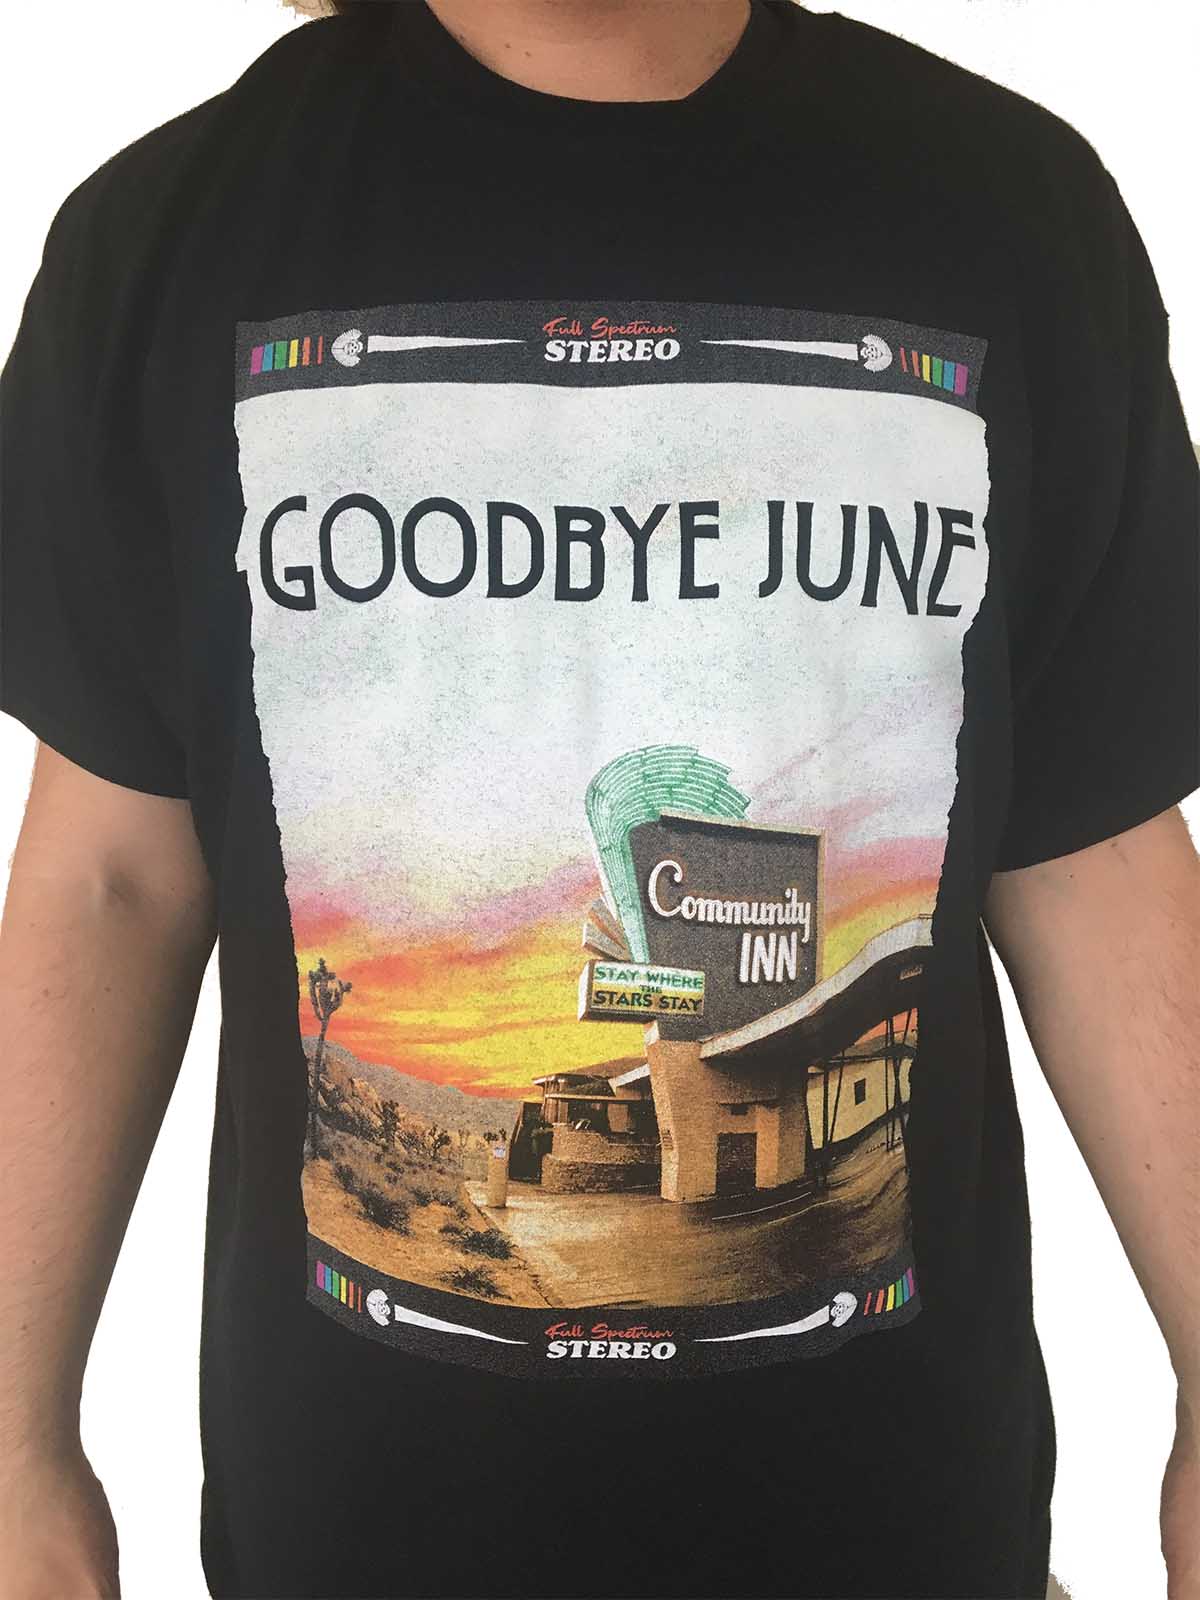 Goodbye June "Community Inn" T shirt